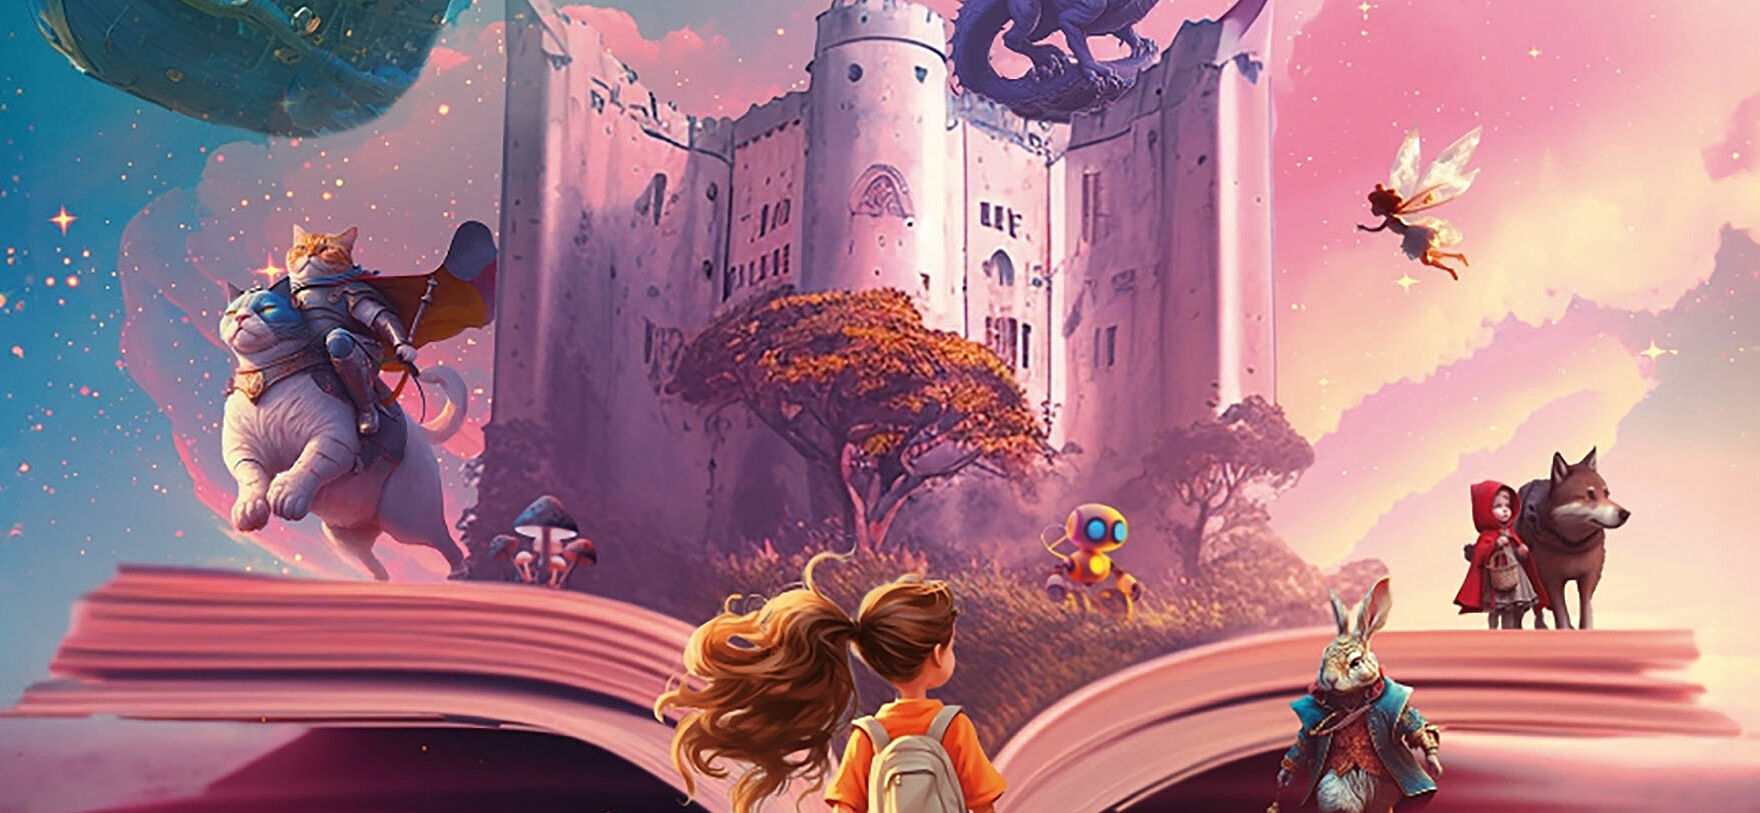 Affiche dessinée du festival du livre jeunesse montrant un monde fantastique avec bateau volant, dragon, fée..